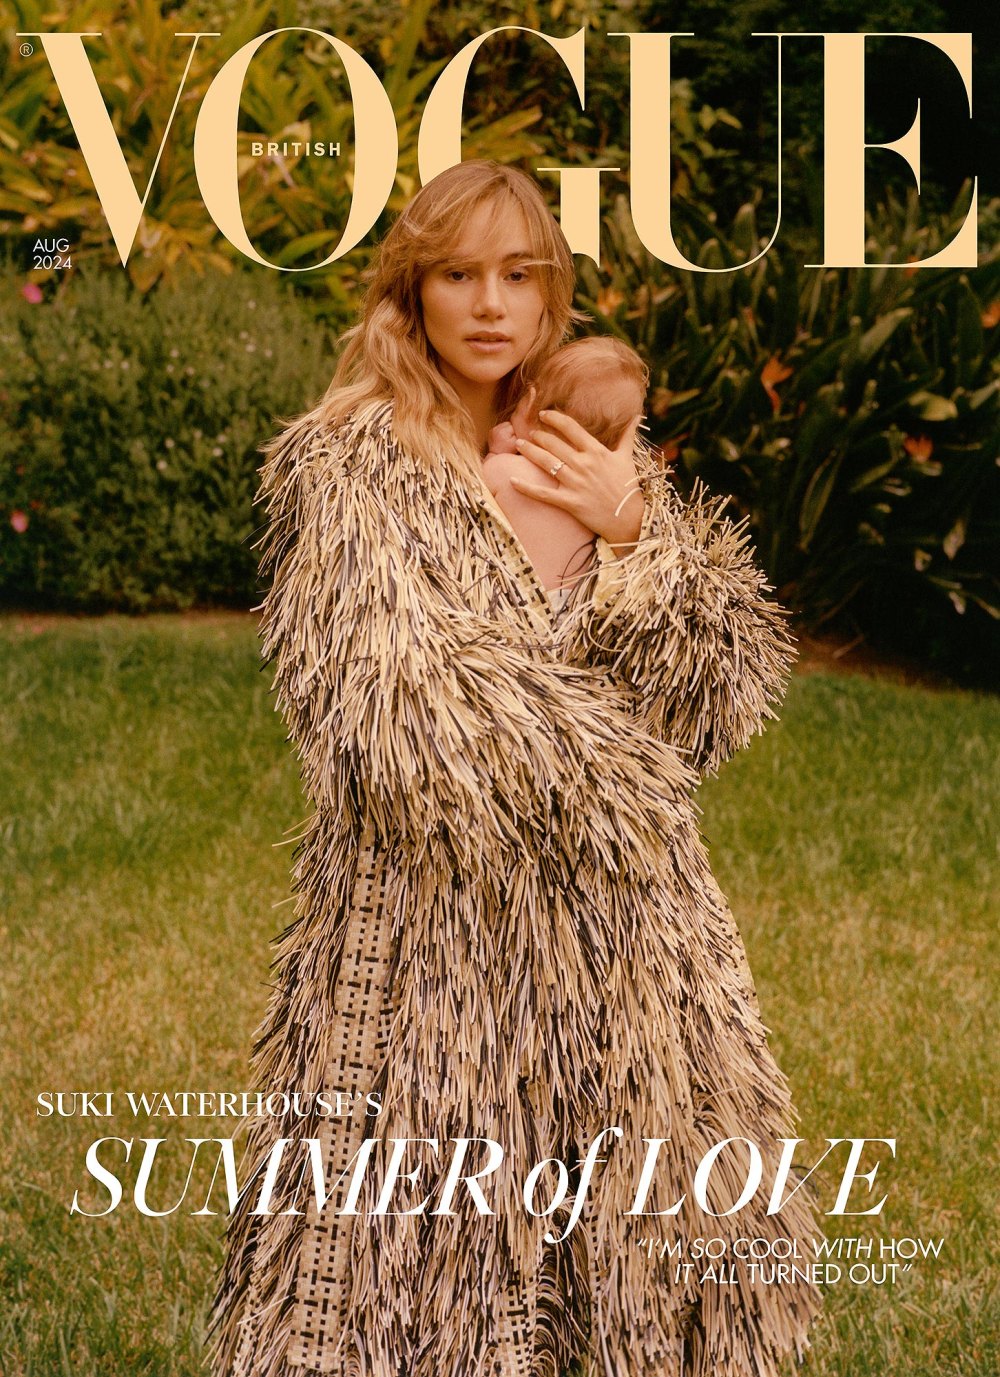 Suki Waterhouse Stuns on Cover of Vogue